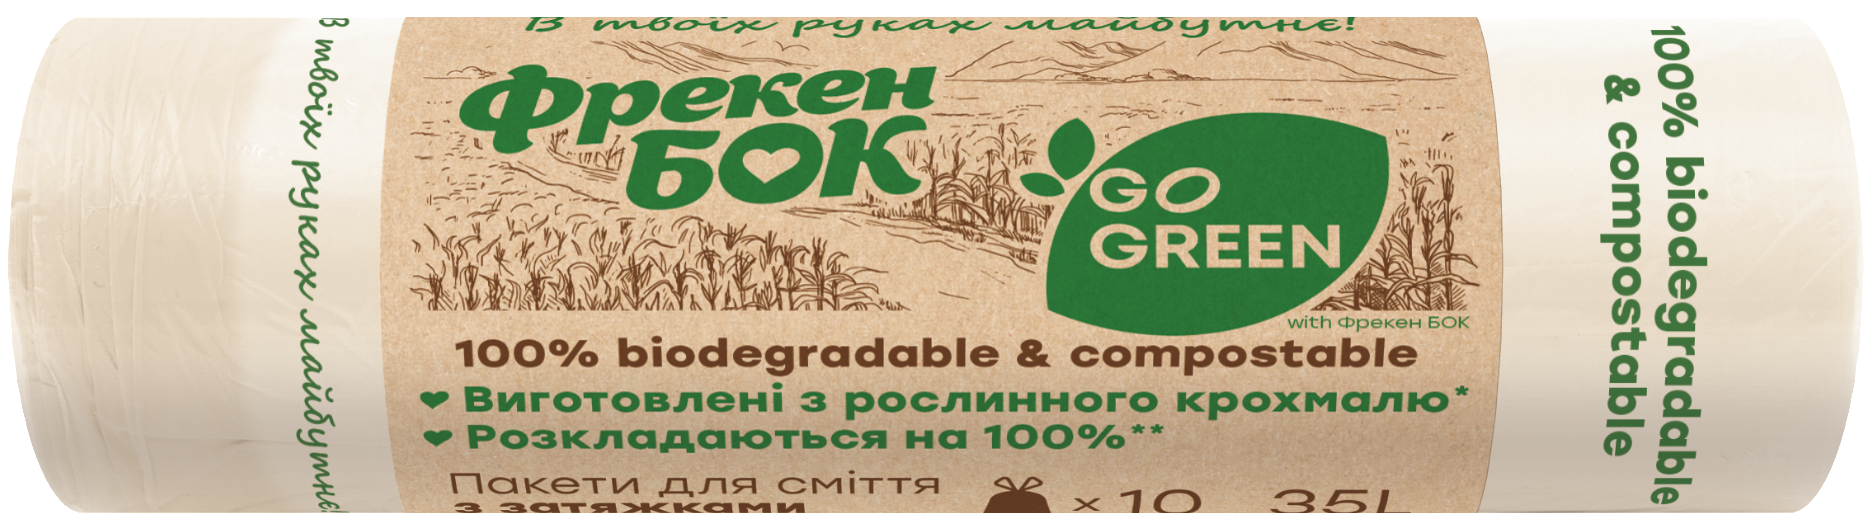 Пакеты для мусора Фрекен Бок Go Green с затяжками, 35 л, 10 шт. - фото 1